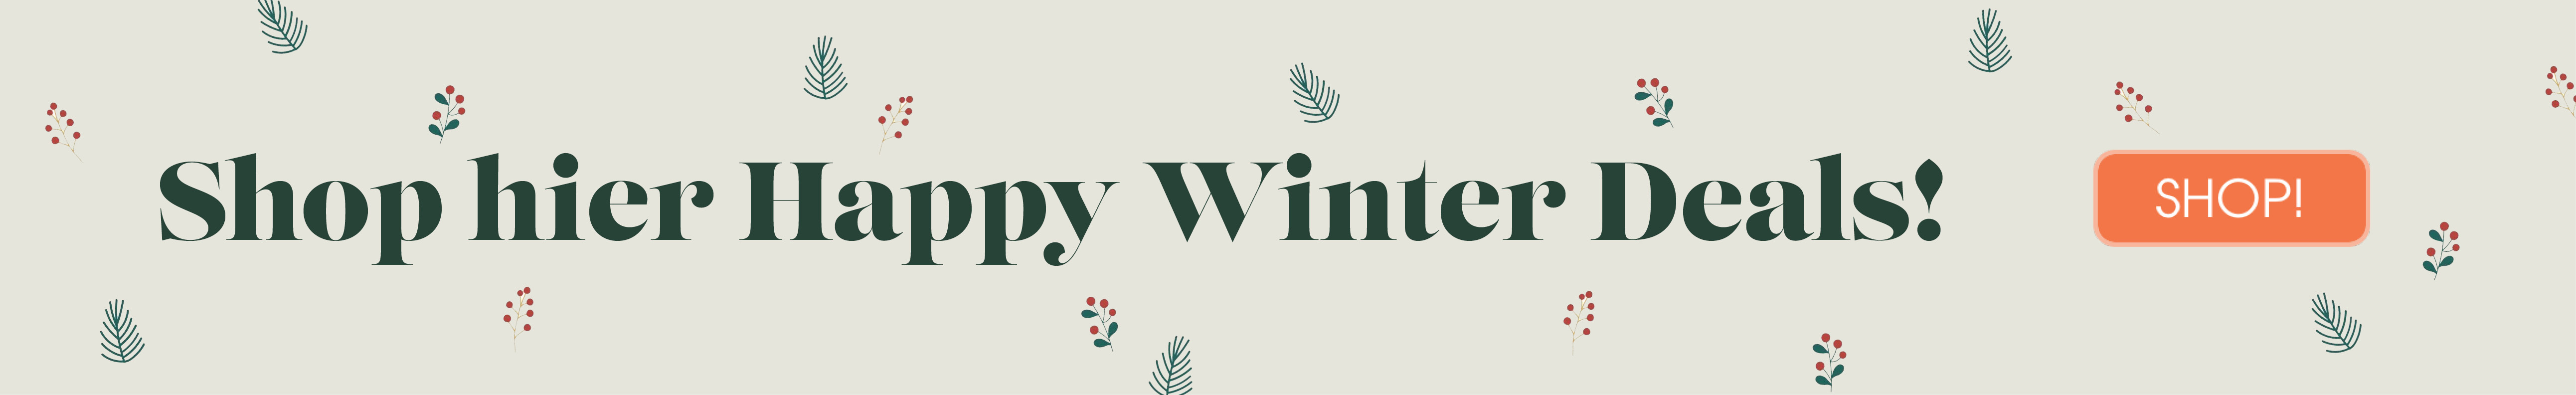 Happy Winter Deals bij BabyPlanet | Kortingen, Acties, Aanbiedingen en Deals!